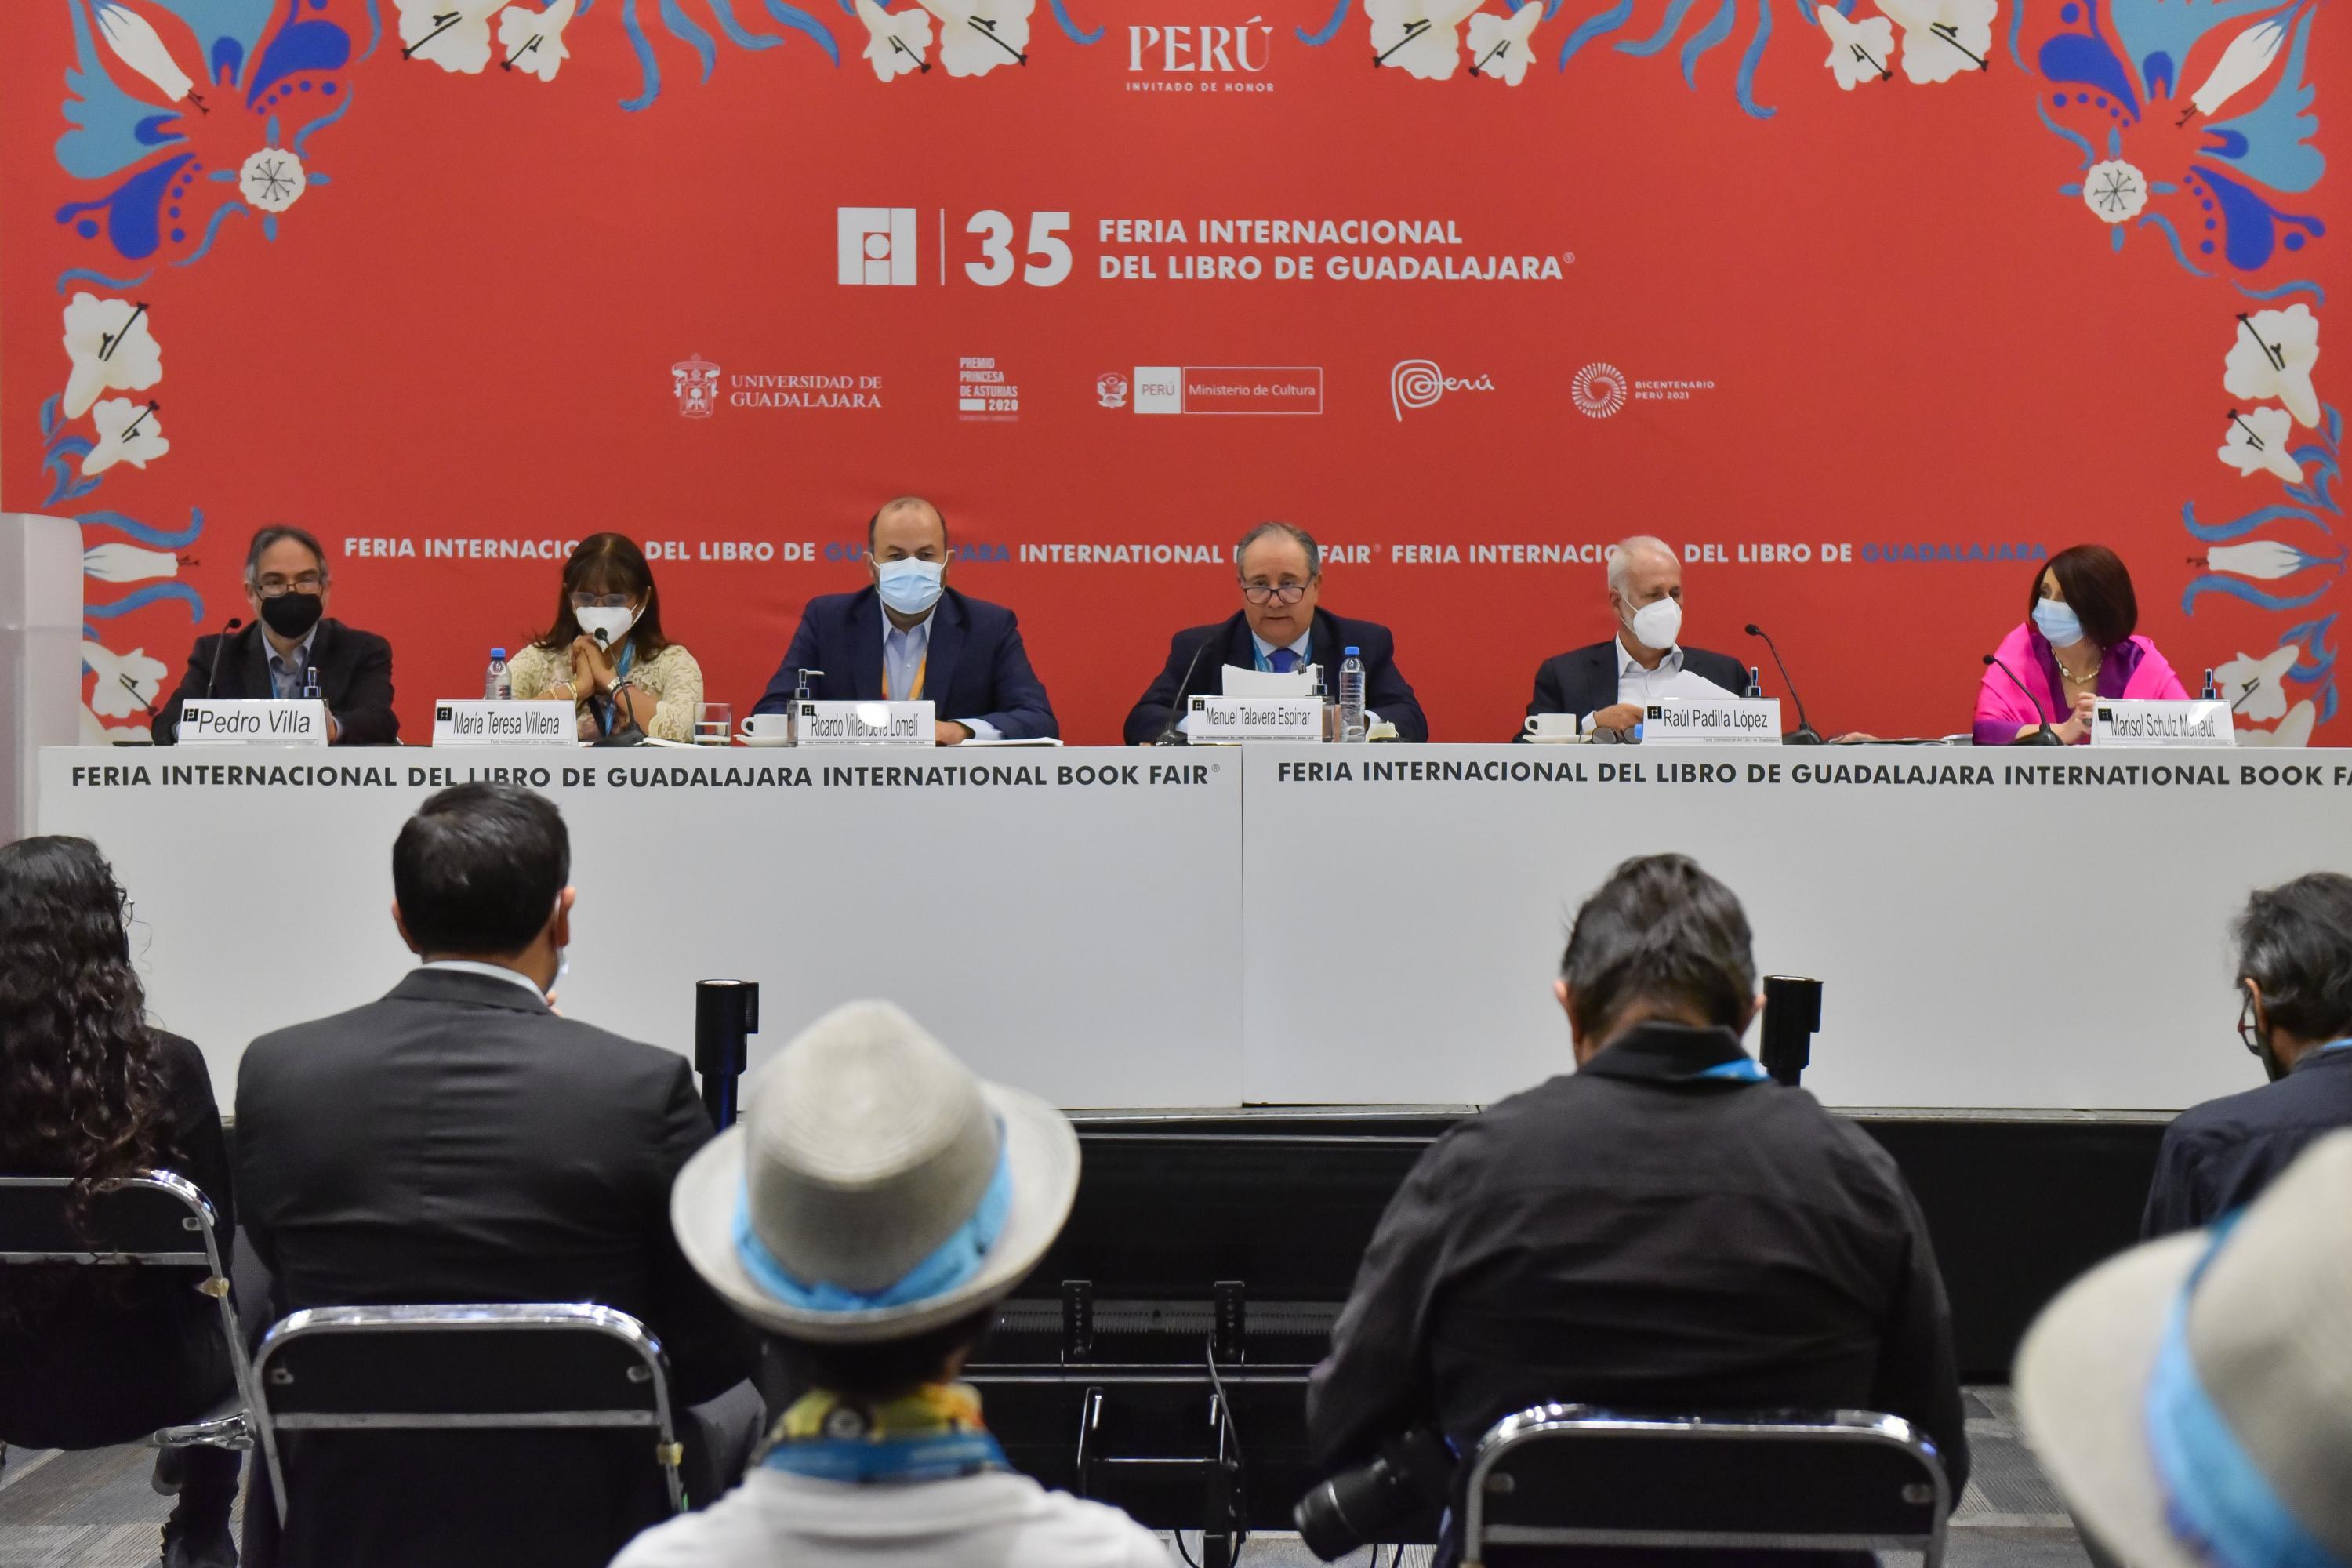 En su regreso presencial a Expo Guadalajara y el CCU, más de 251 mil asistentes participaron en esta edición, que tuvo a Perú como protagonista. No se registró ningún caso positivo de COVID-19 durante los nueve días de actividades